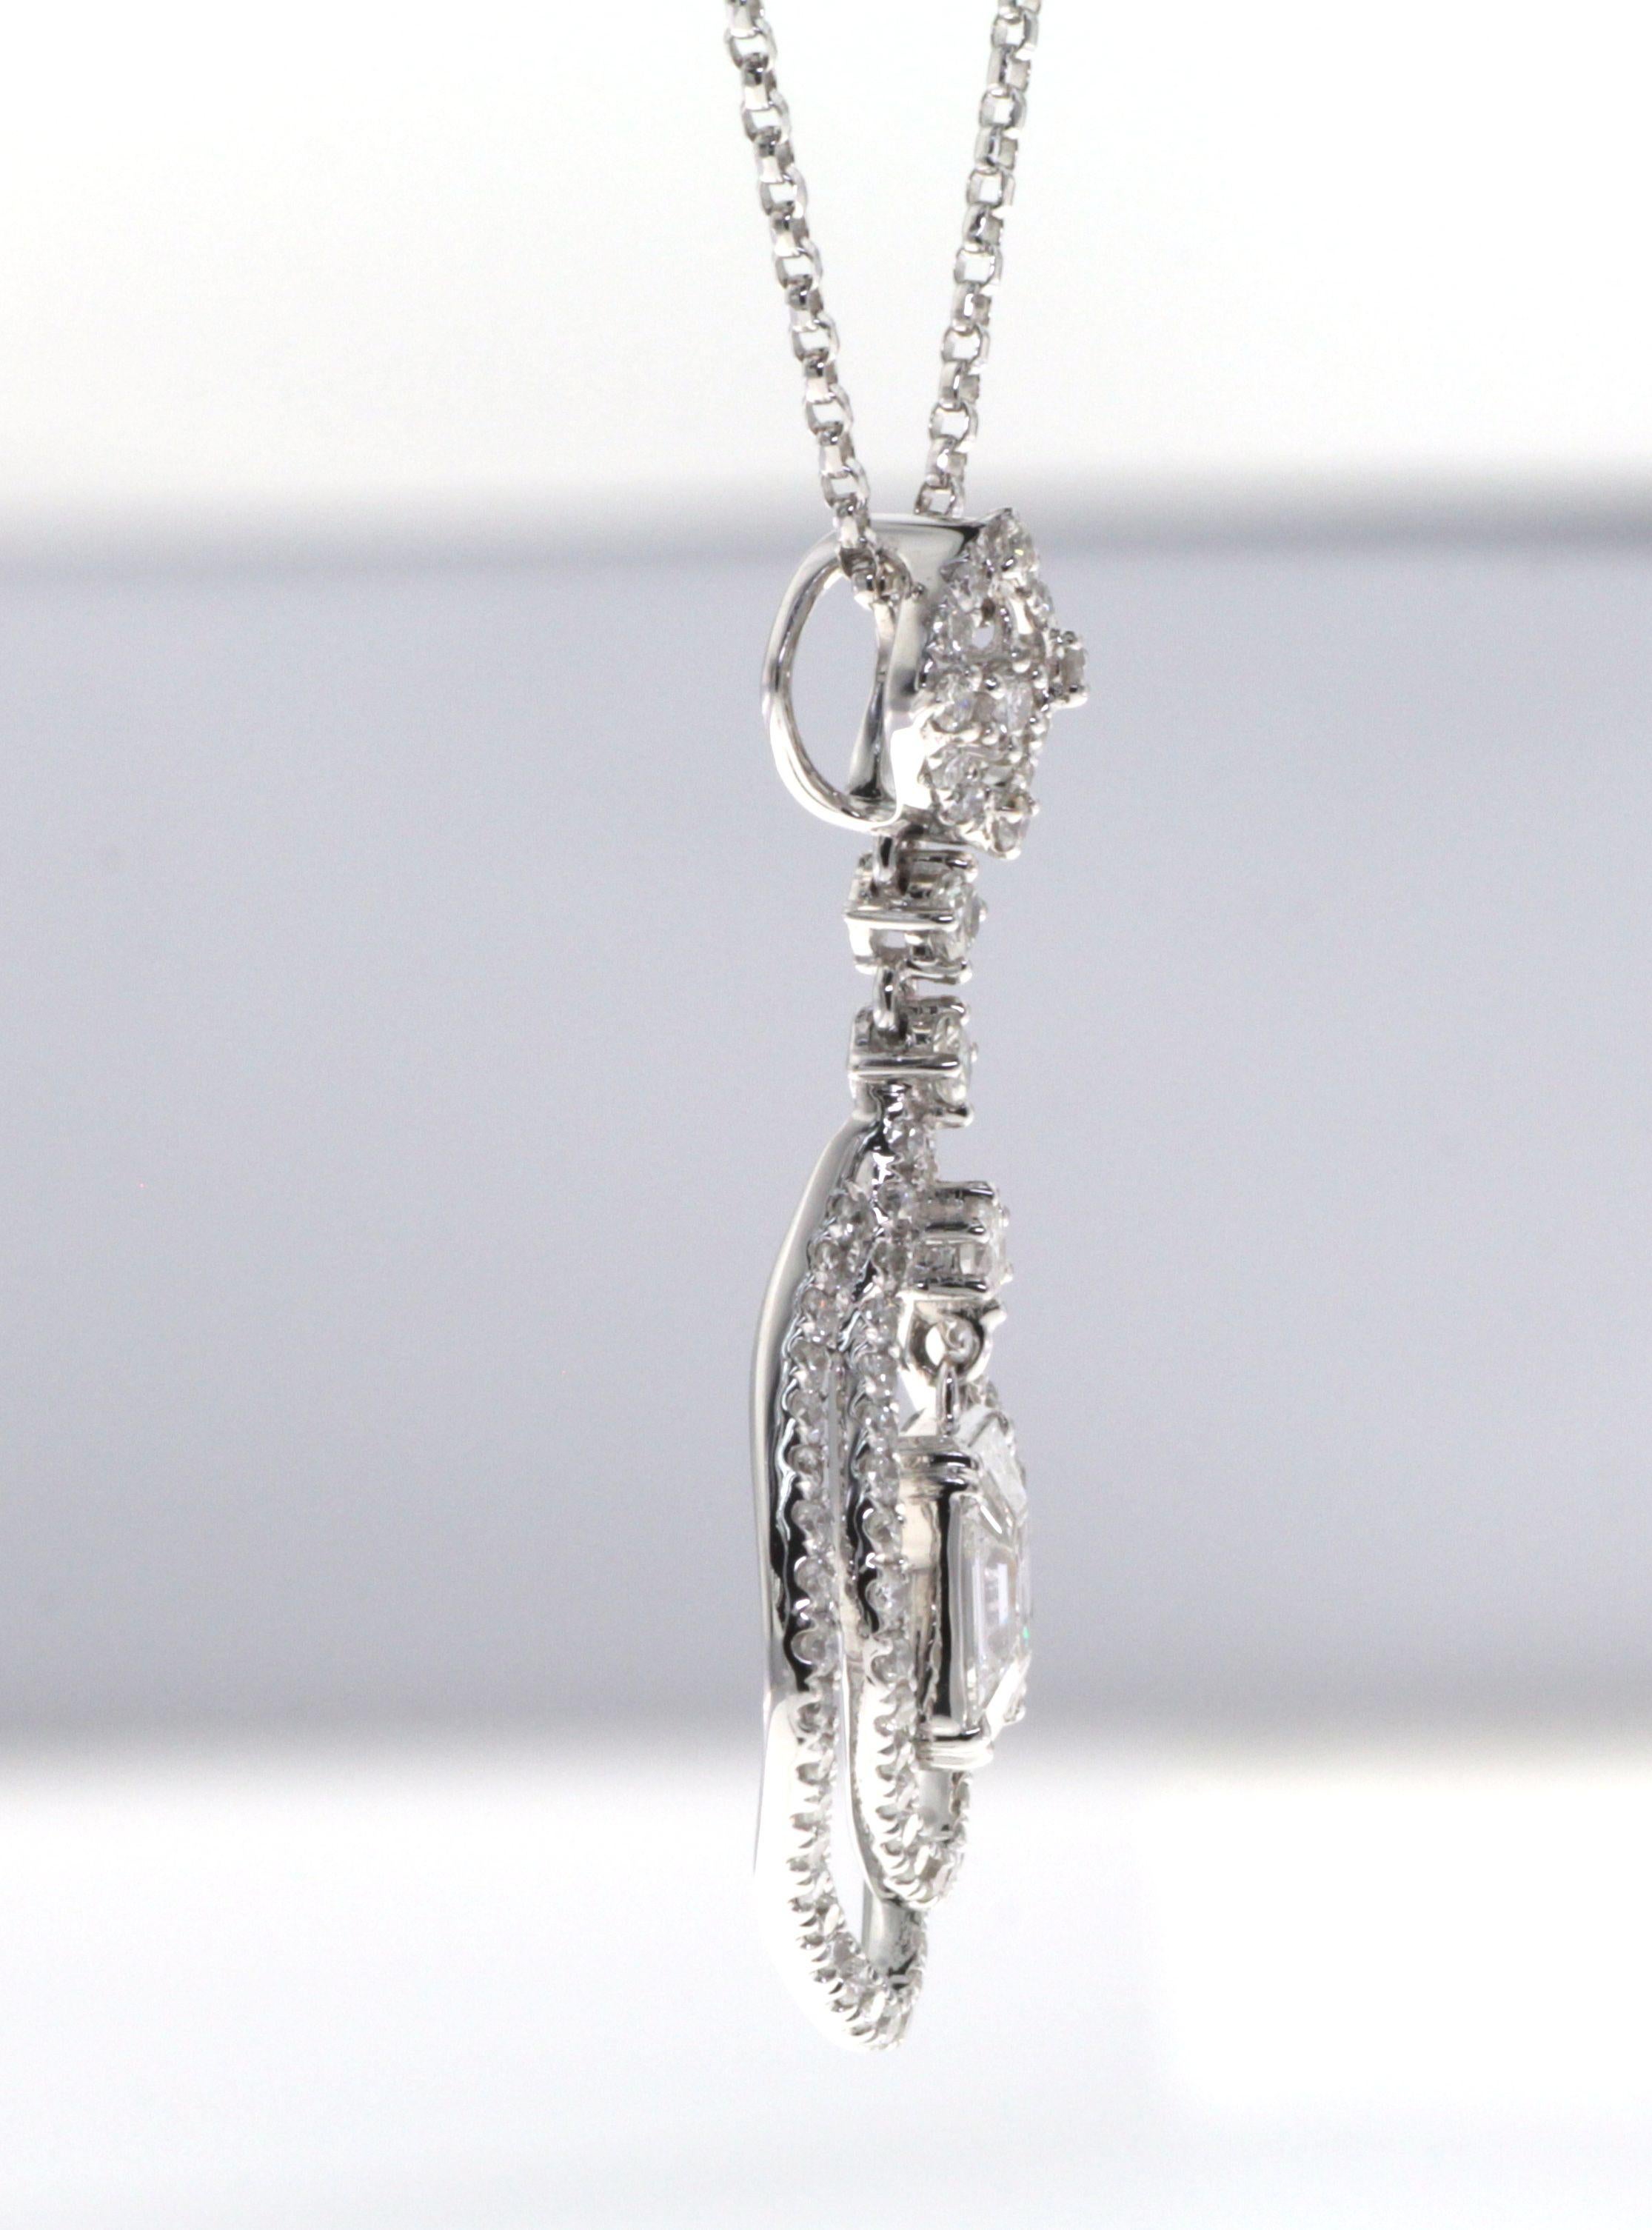 Ce collier pendentif est un chef-d'œuvre d'illusion et de réalité, mêlant l'art de la conception de bijoux à la beauté inhérente des diamants. Suspendu avec élégance à une chaîne en or blanc 18 carats, le pendentif est un triomphe de l'artisanat et